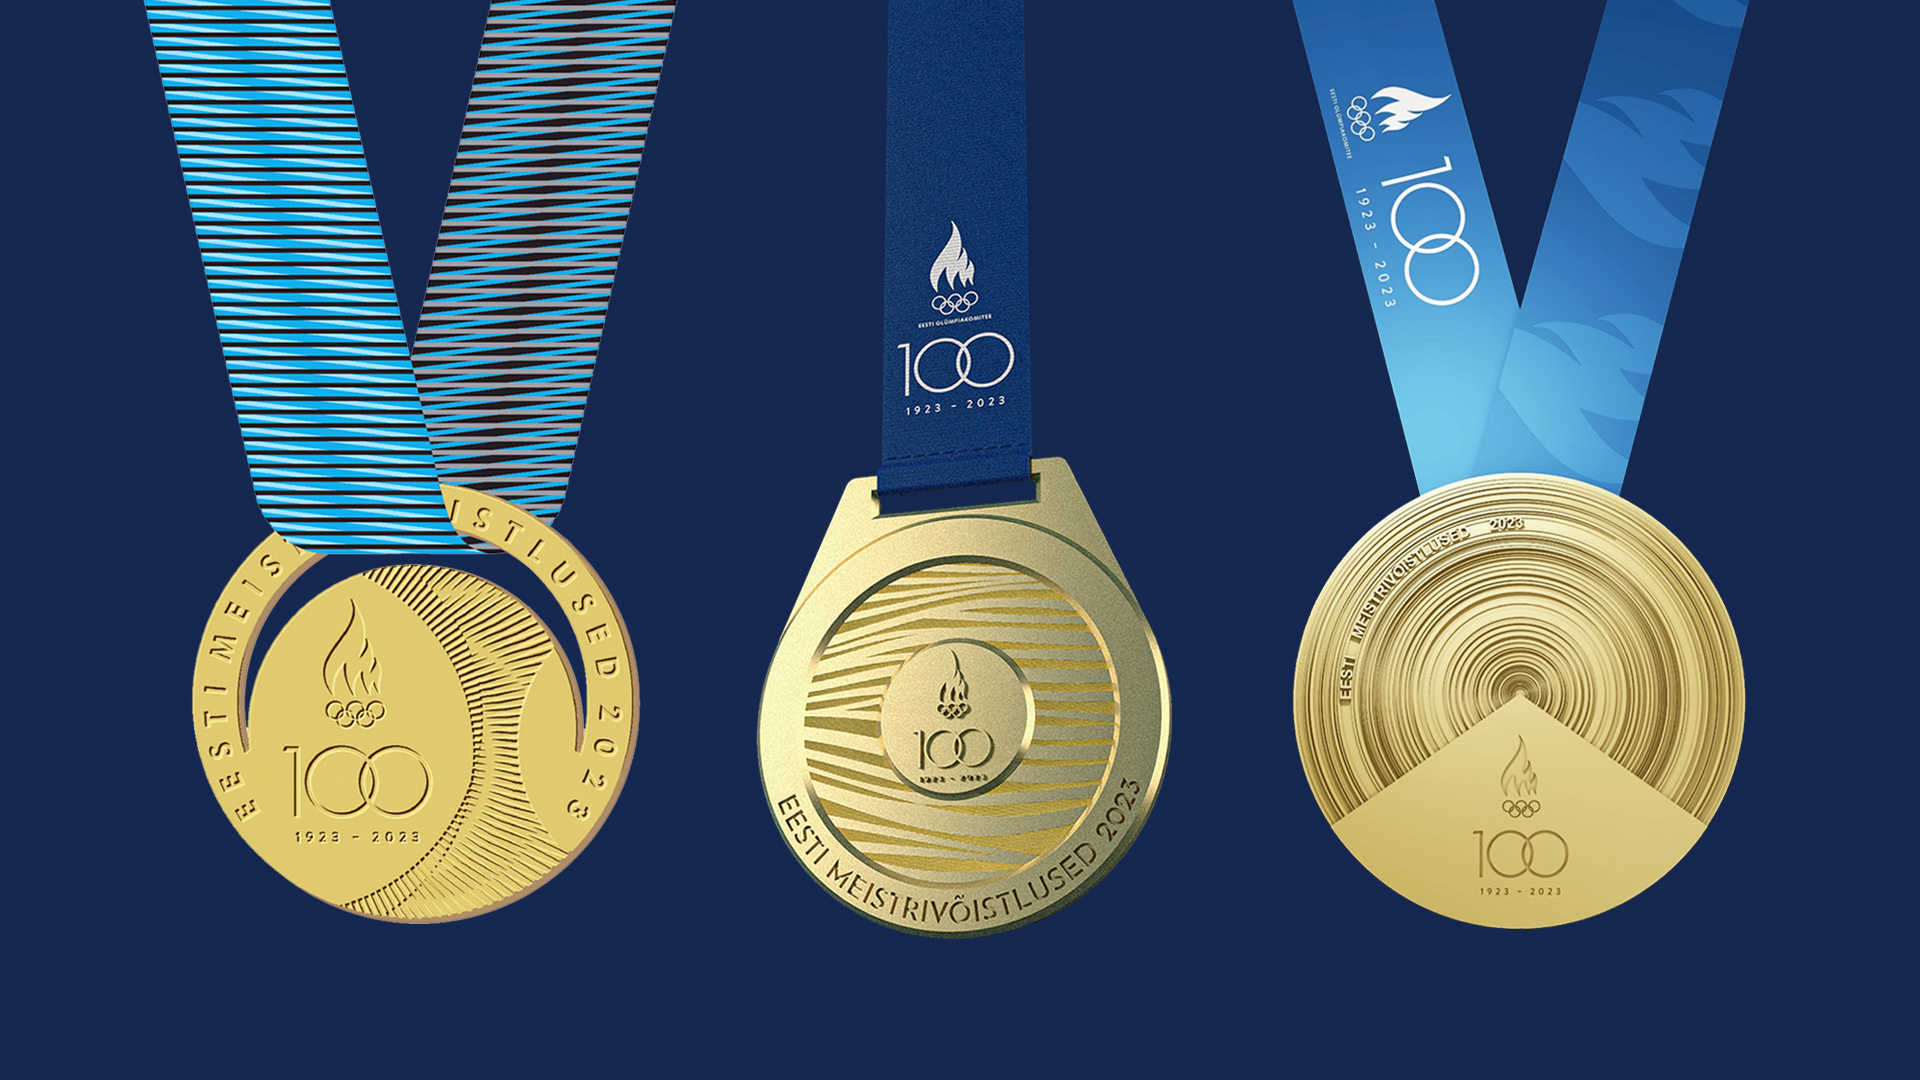 vali EOK 100 medali kujundus